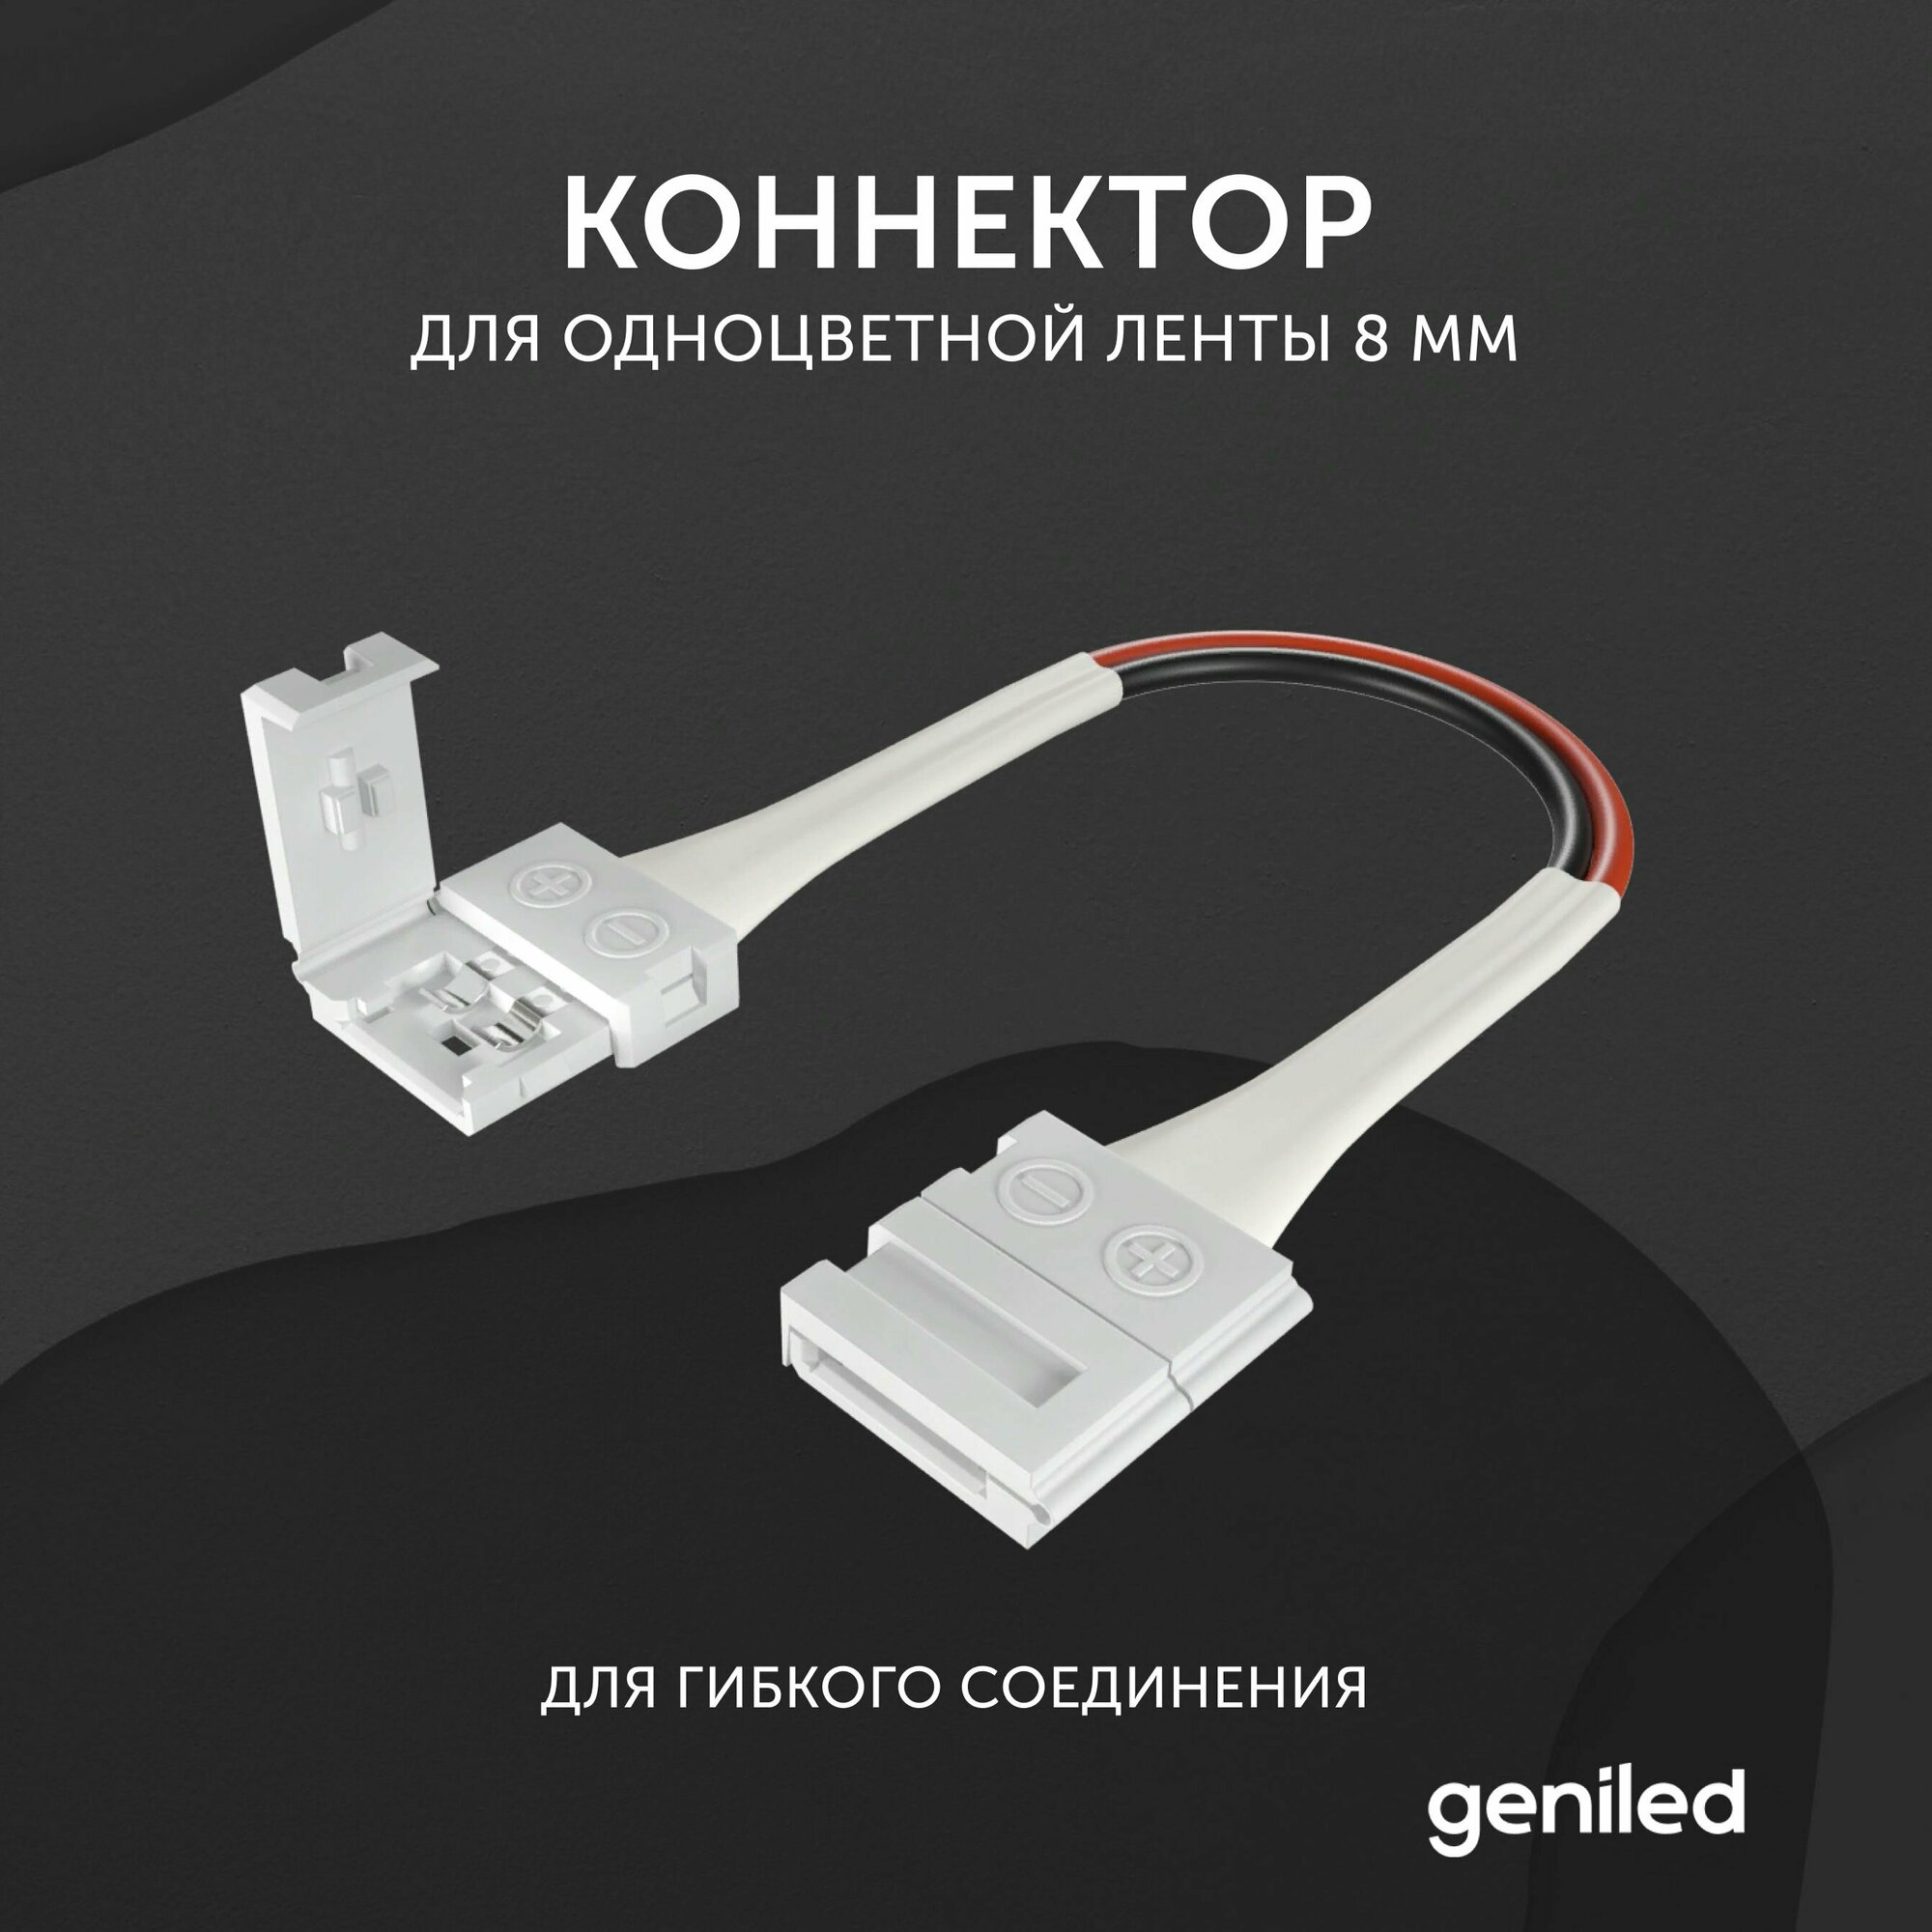 Коннектор для светодиодной ленты 8 мм для гибкого соединения